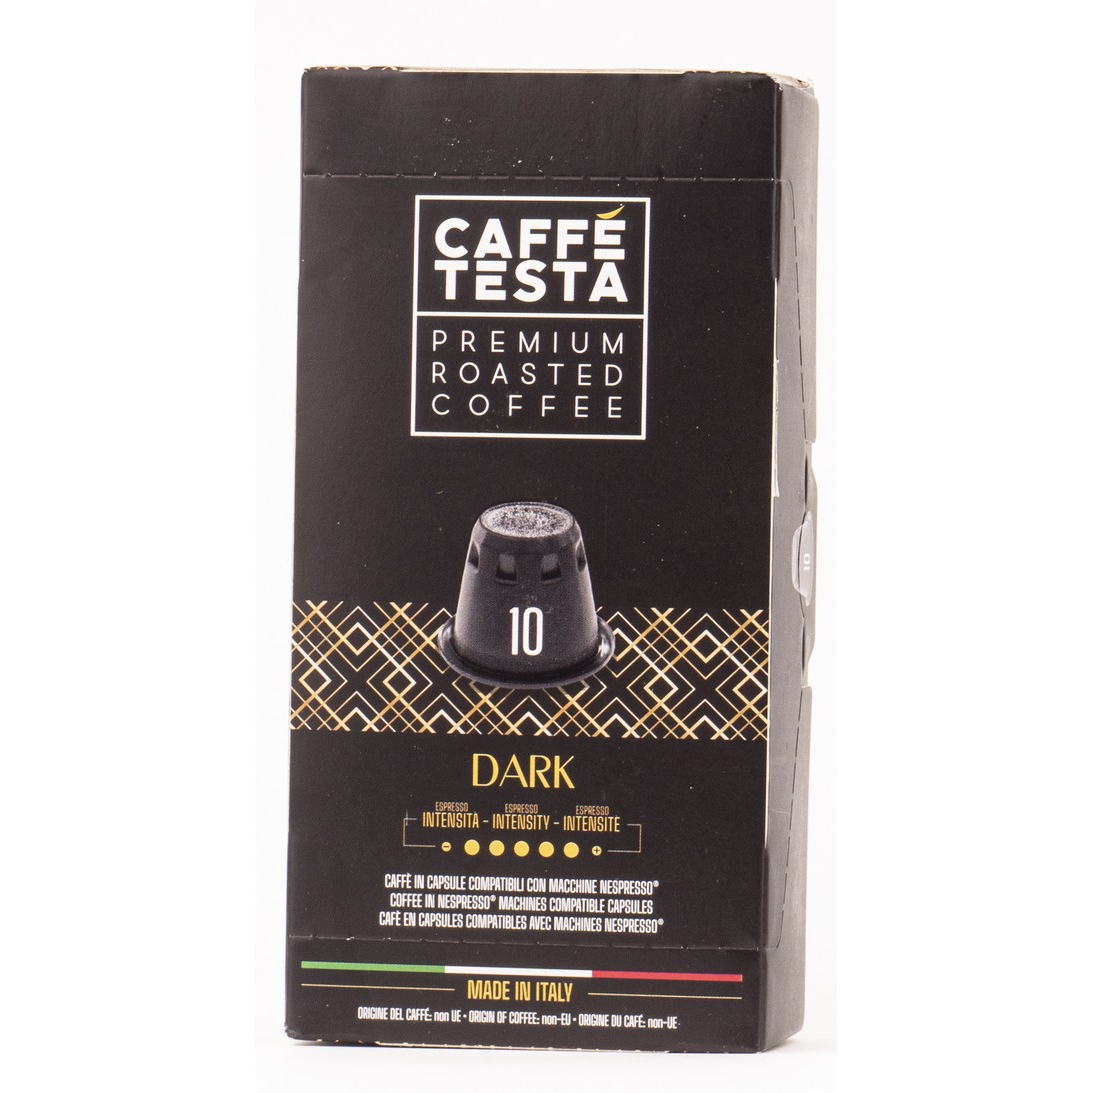 Кофе Caffe Testa Dark в капсулах 20/80, 55 г кофе в капсулах diemme caffe corpo 50 шт